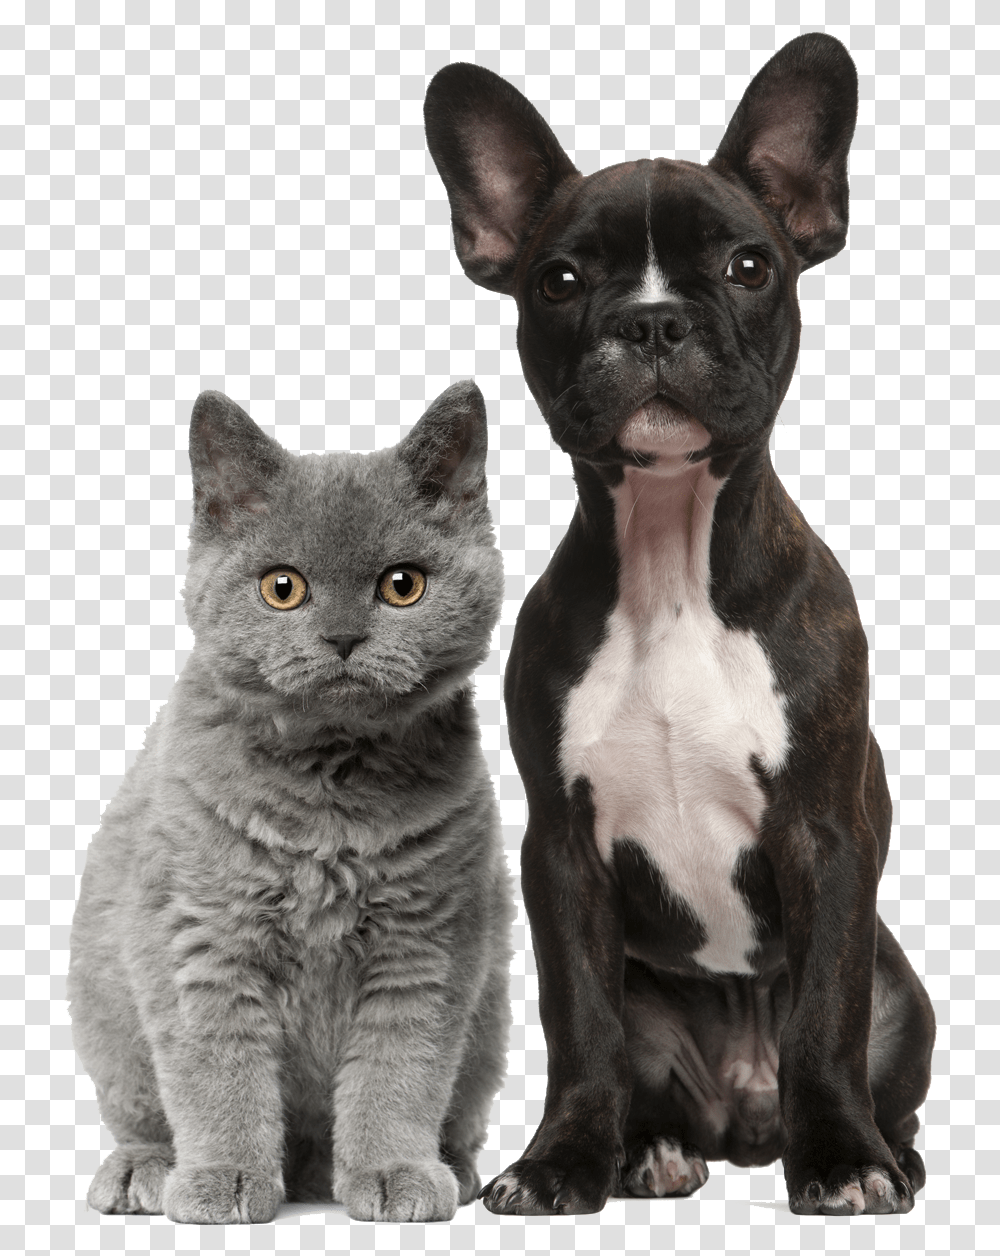 Dog Cat, Pet, Canine, Animal, Mammal Transparent Png